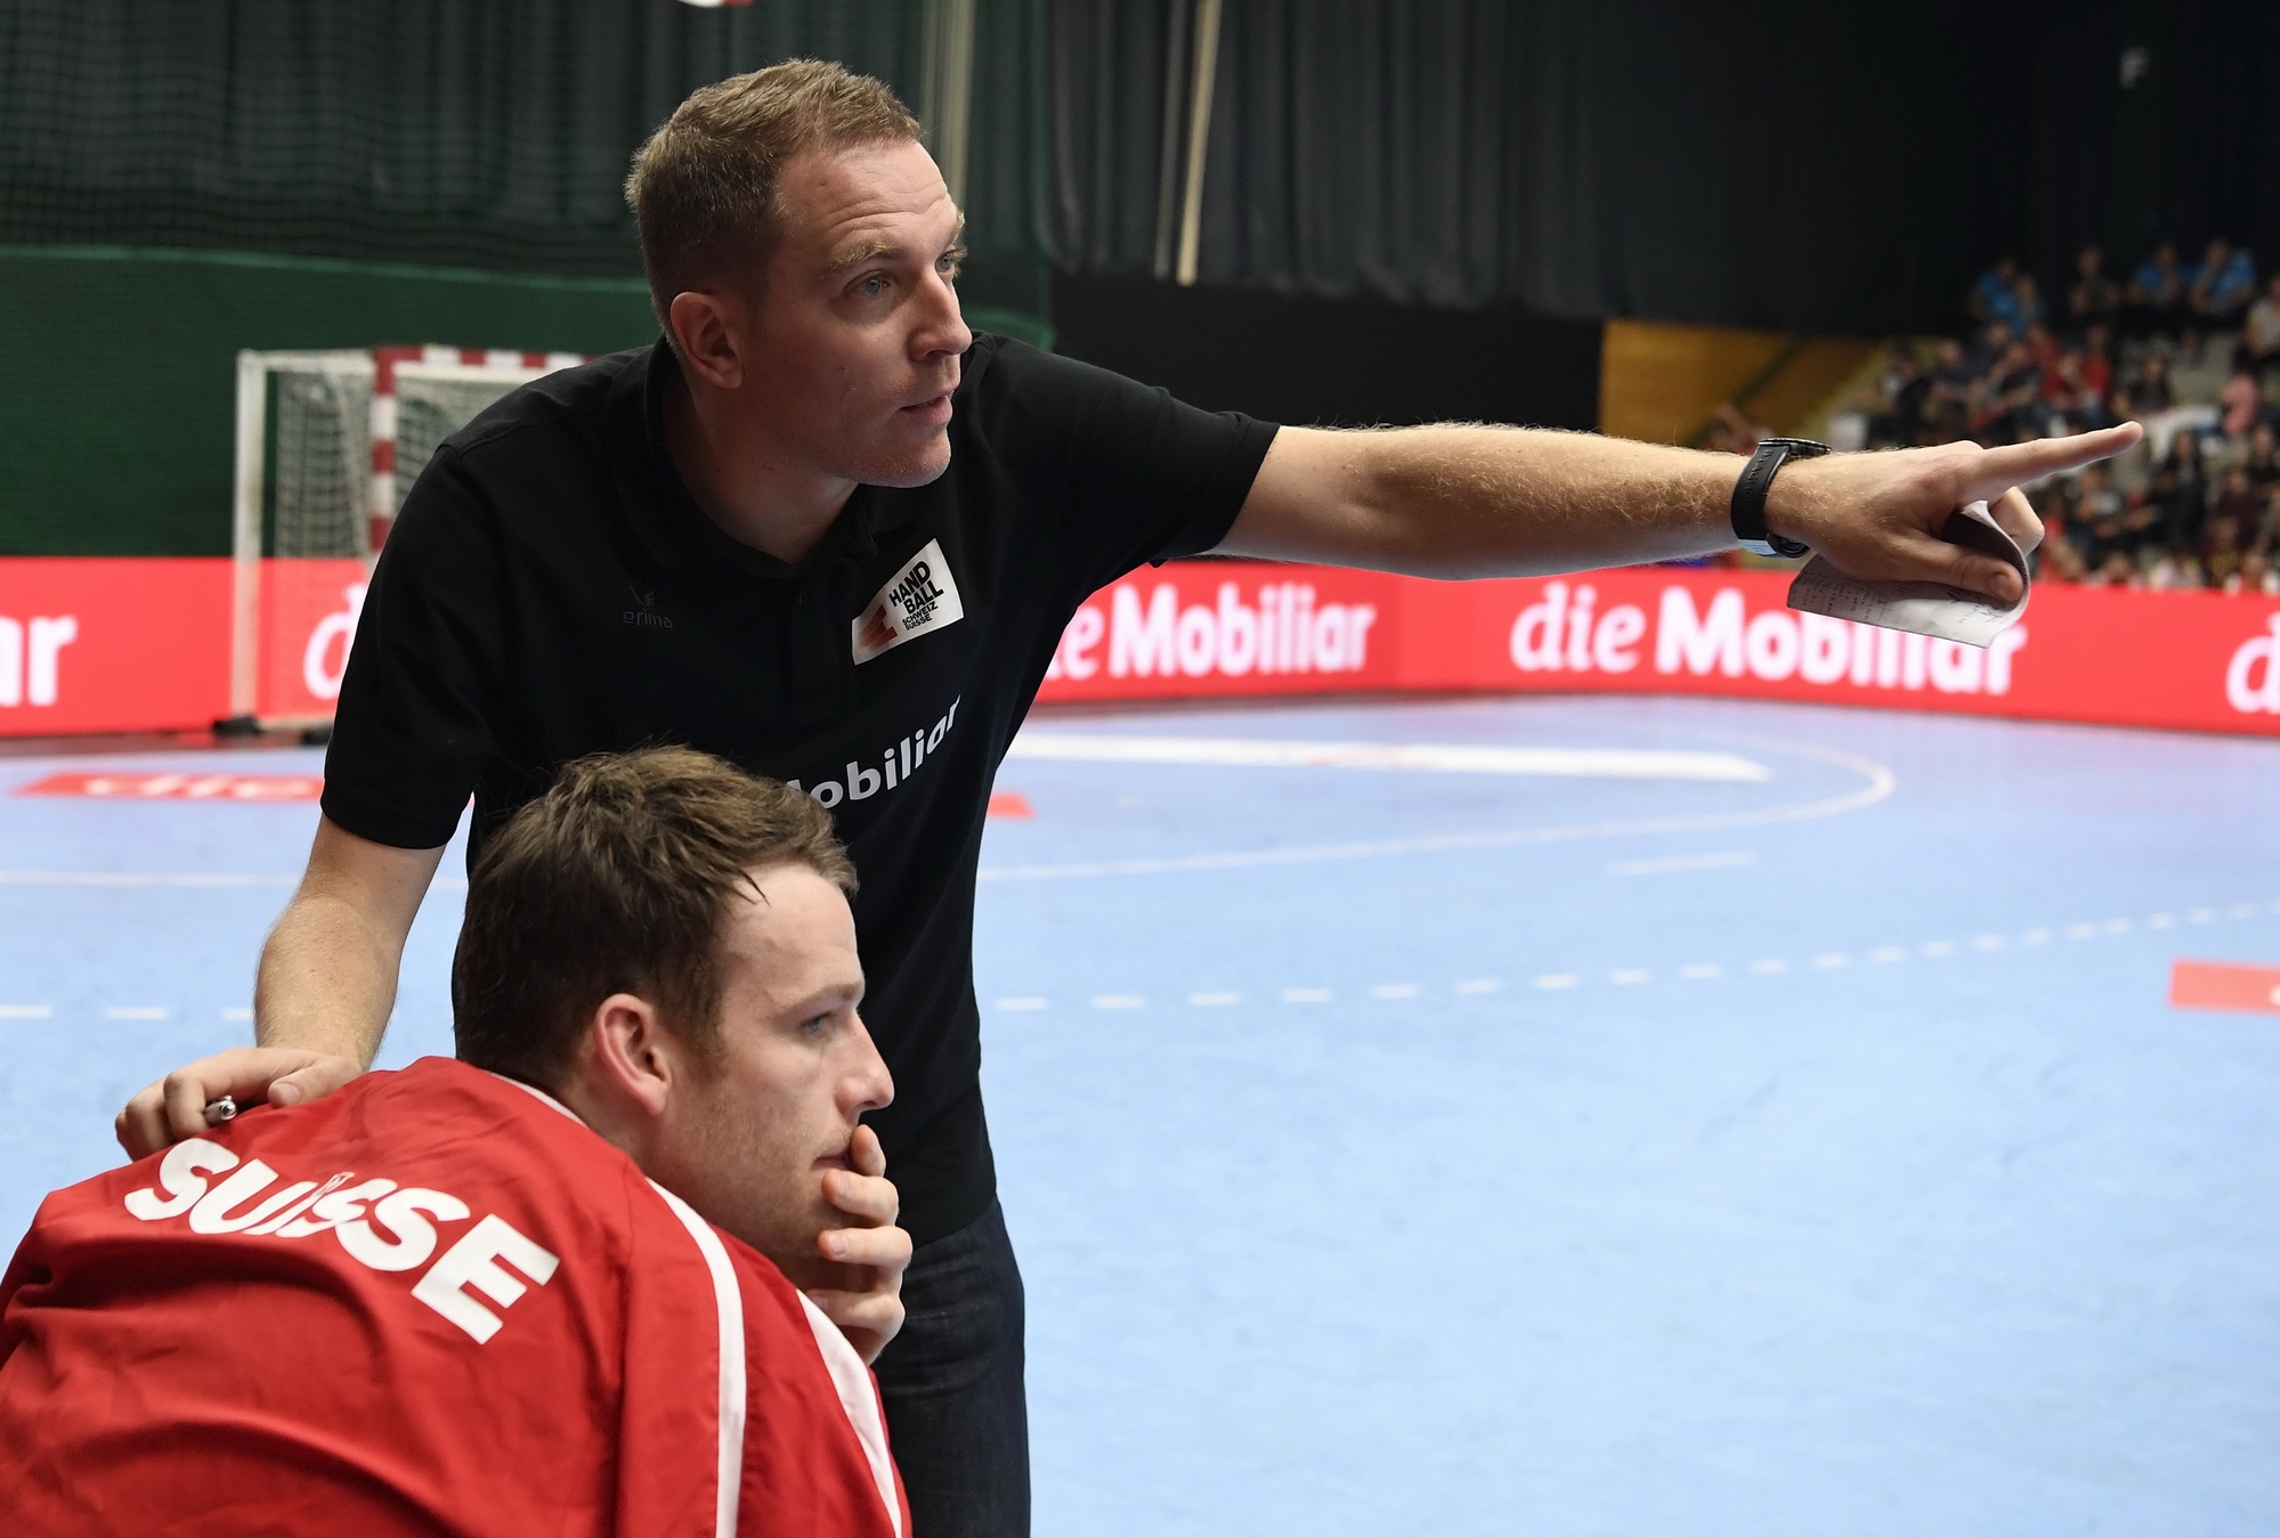 Nationaltrainer Michael Suter weist den Weg. (Alexander Wagner, 26.10.2019)